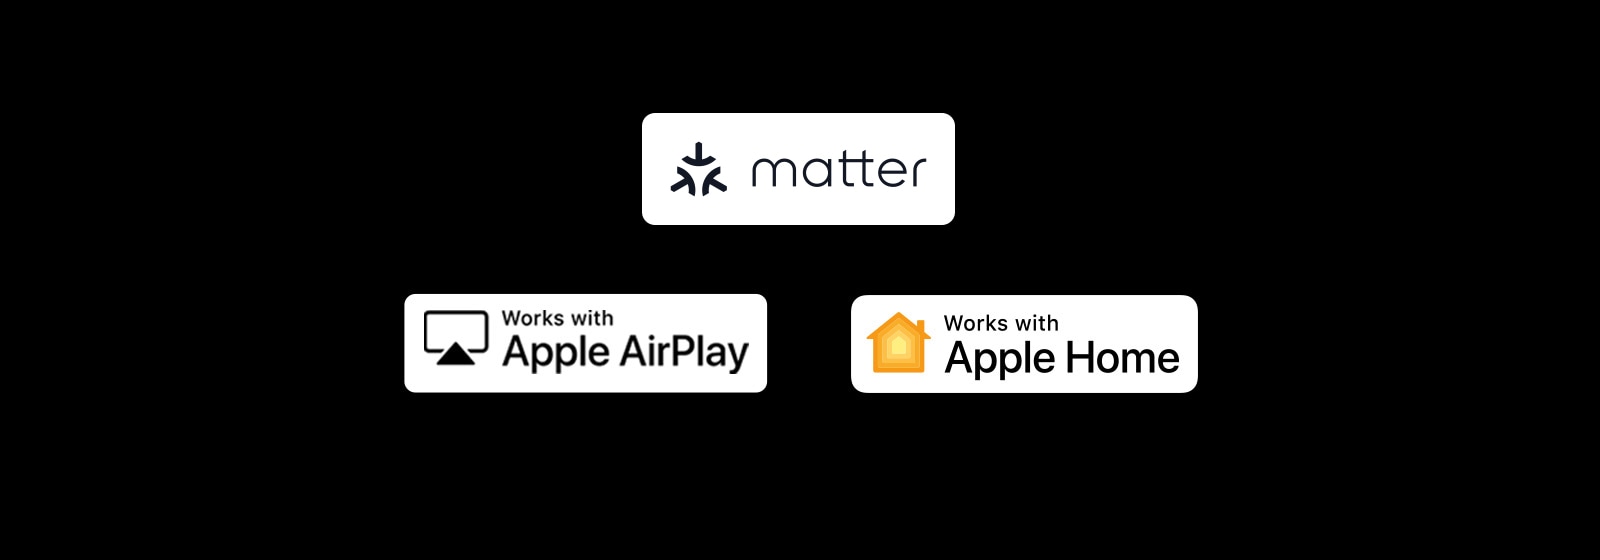 Το λογότυπο "alexa built-in" Το λογότυπο "works with Apple AirPlay" Το λογότυπο "works with Apple Home" Το λογότυπο "works with Matter"